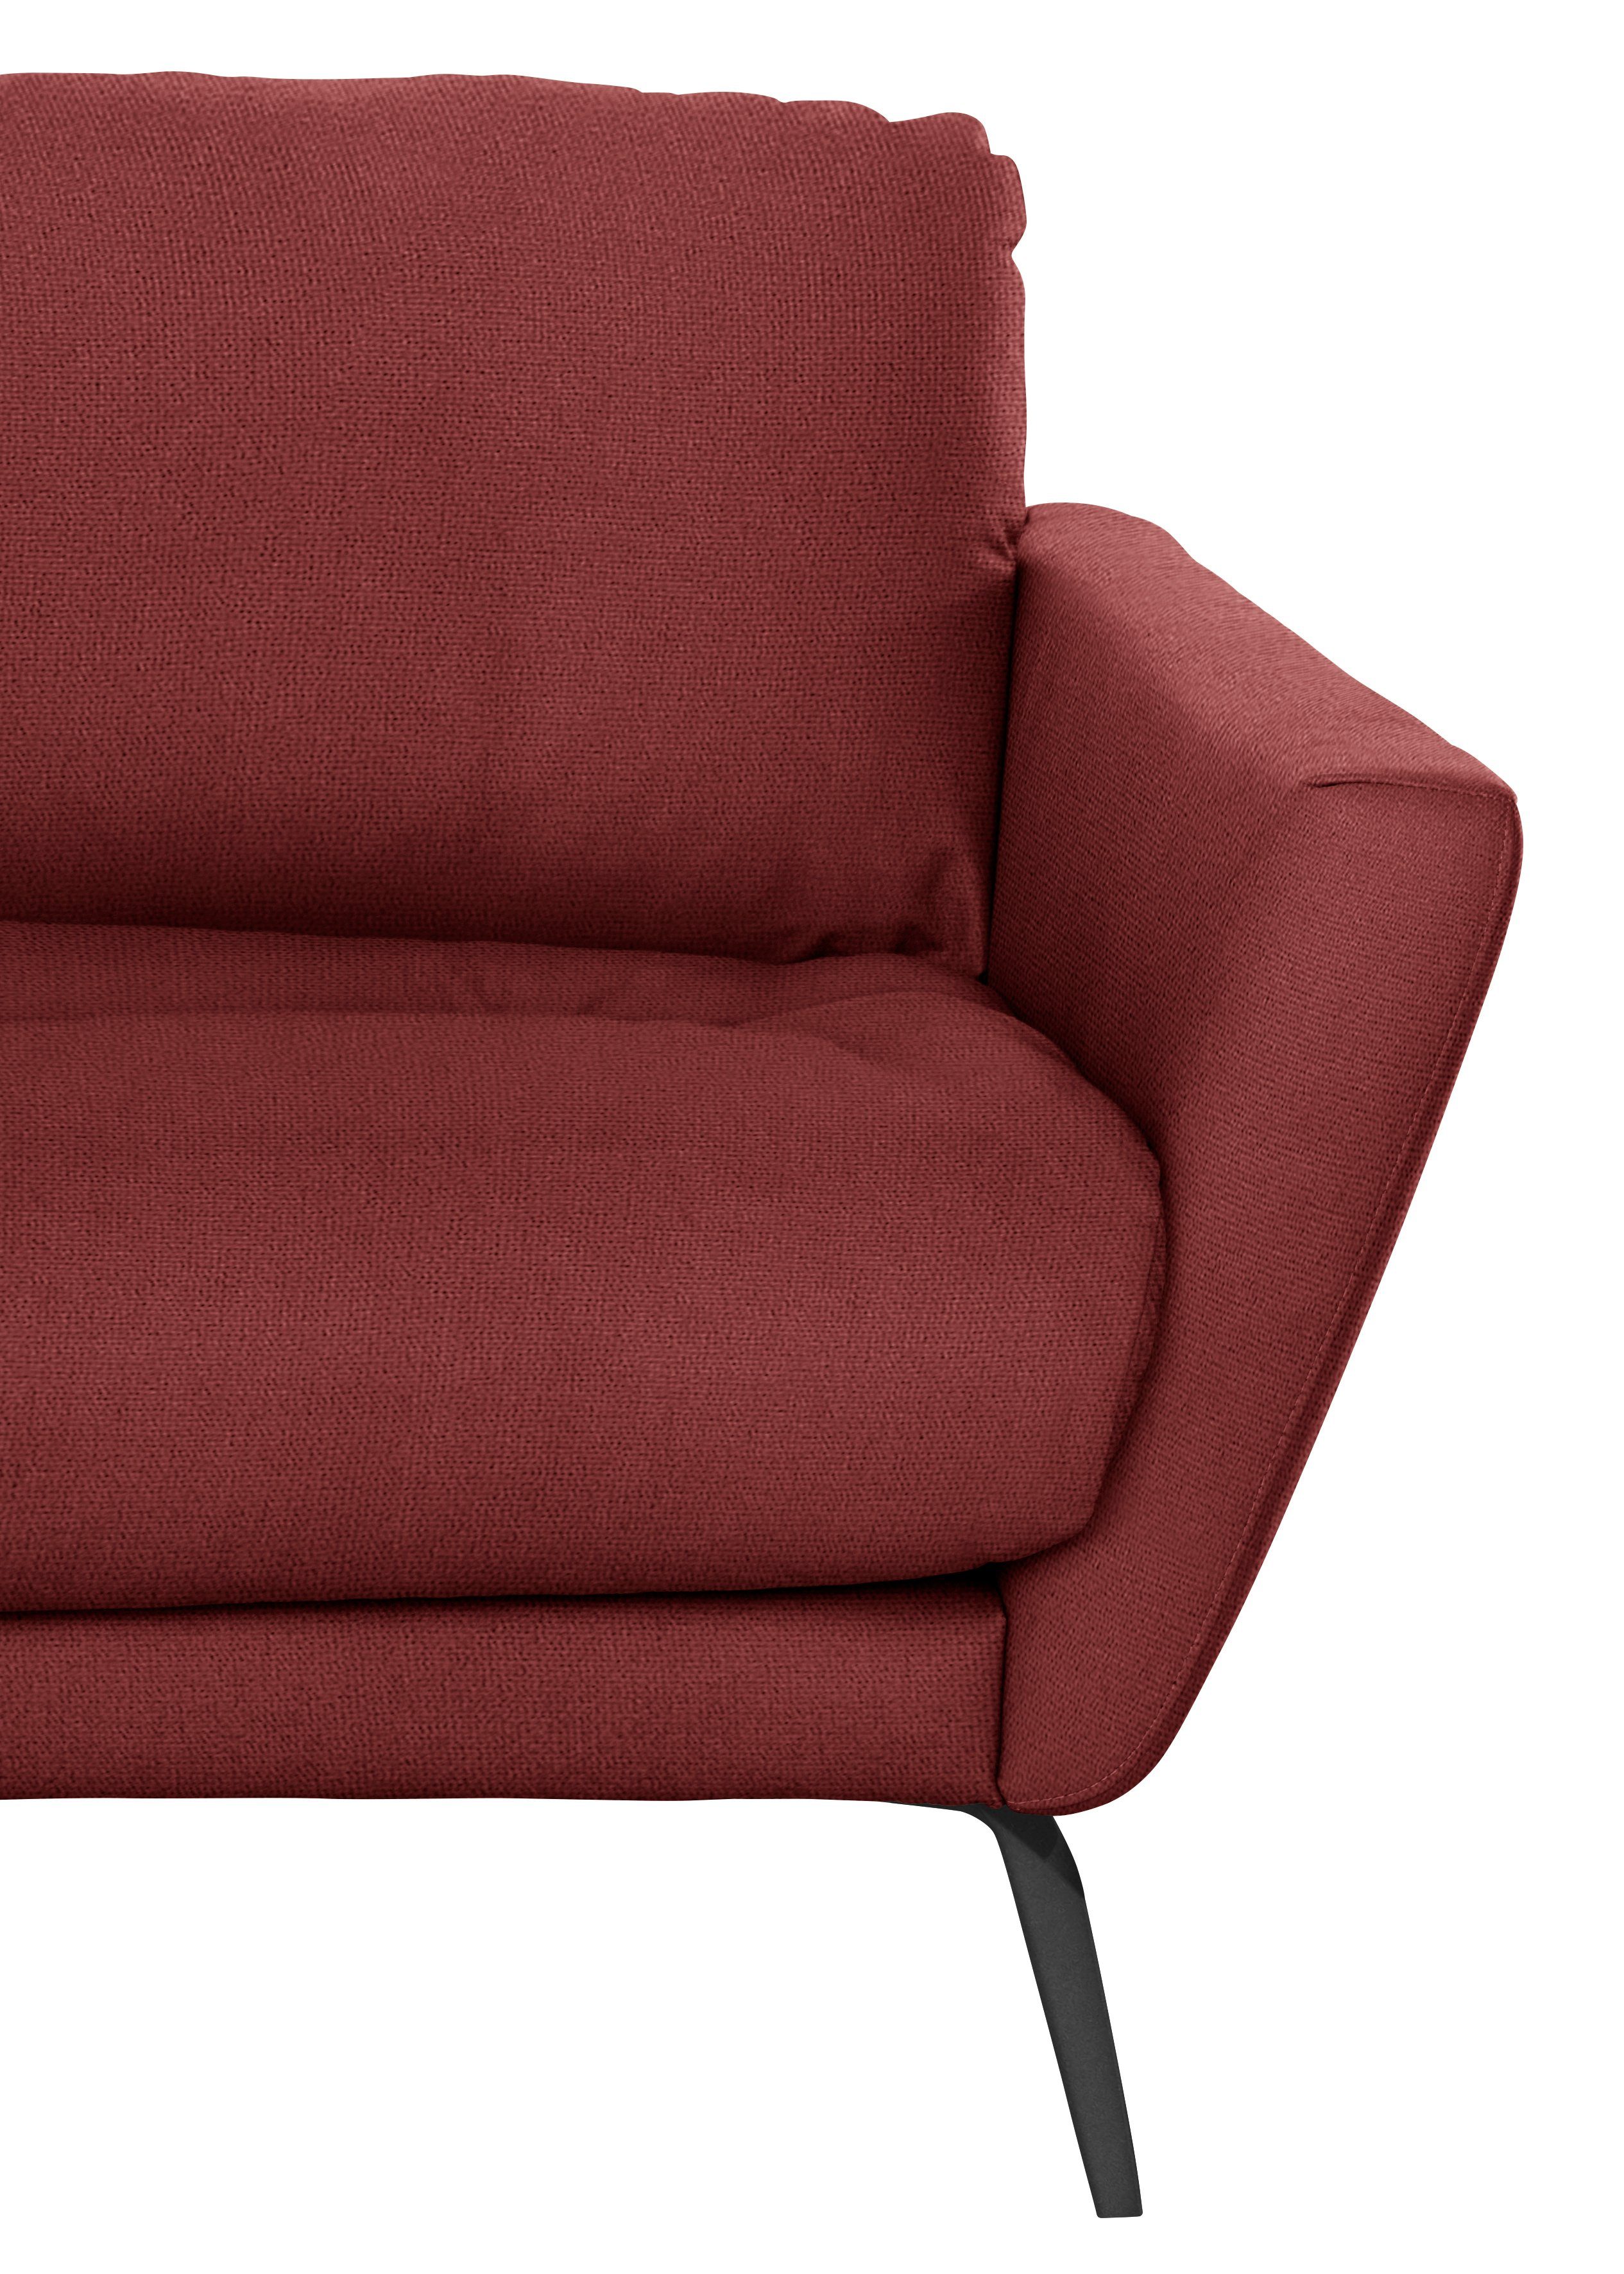 W.SCHILLIG Big-Sofa softy, mit dekorativer im pulverbeschichtet schwarz Sitz, Heftung Füße